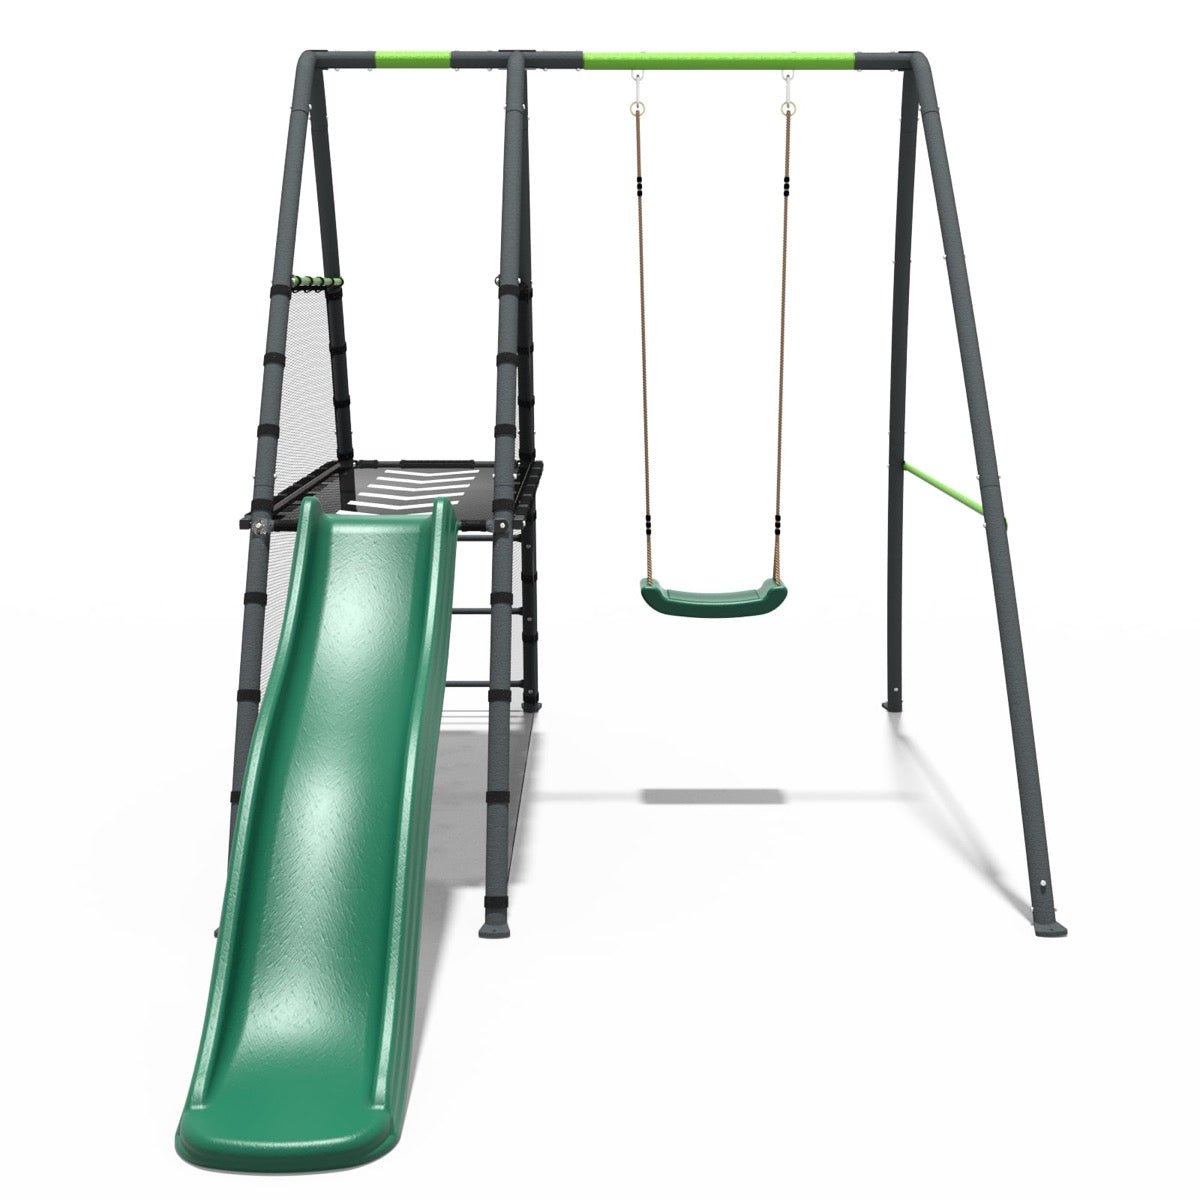 Rebo Steel Series Metal Swing Set with Slide Platform & 6ft Slide - Single Green